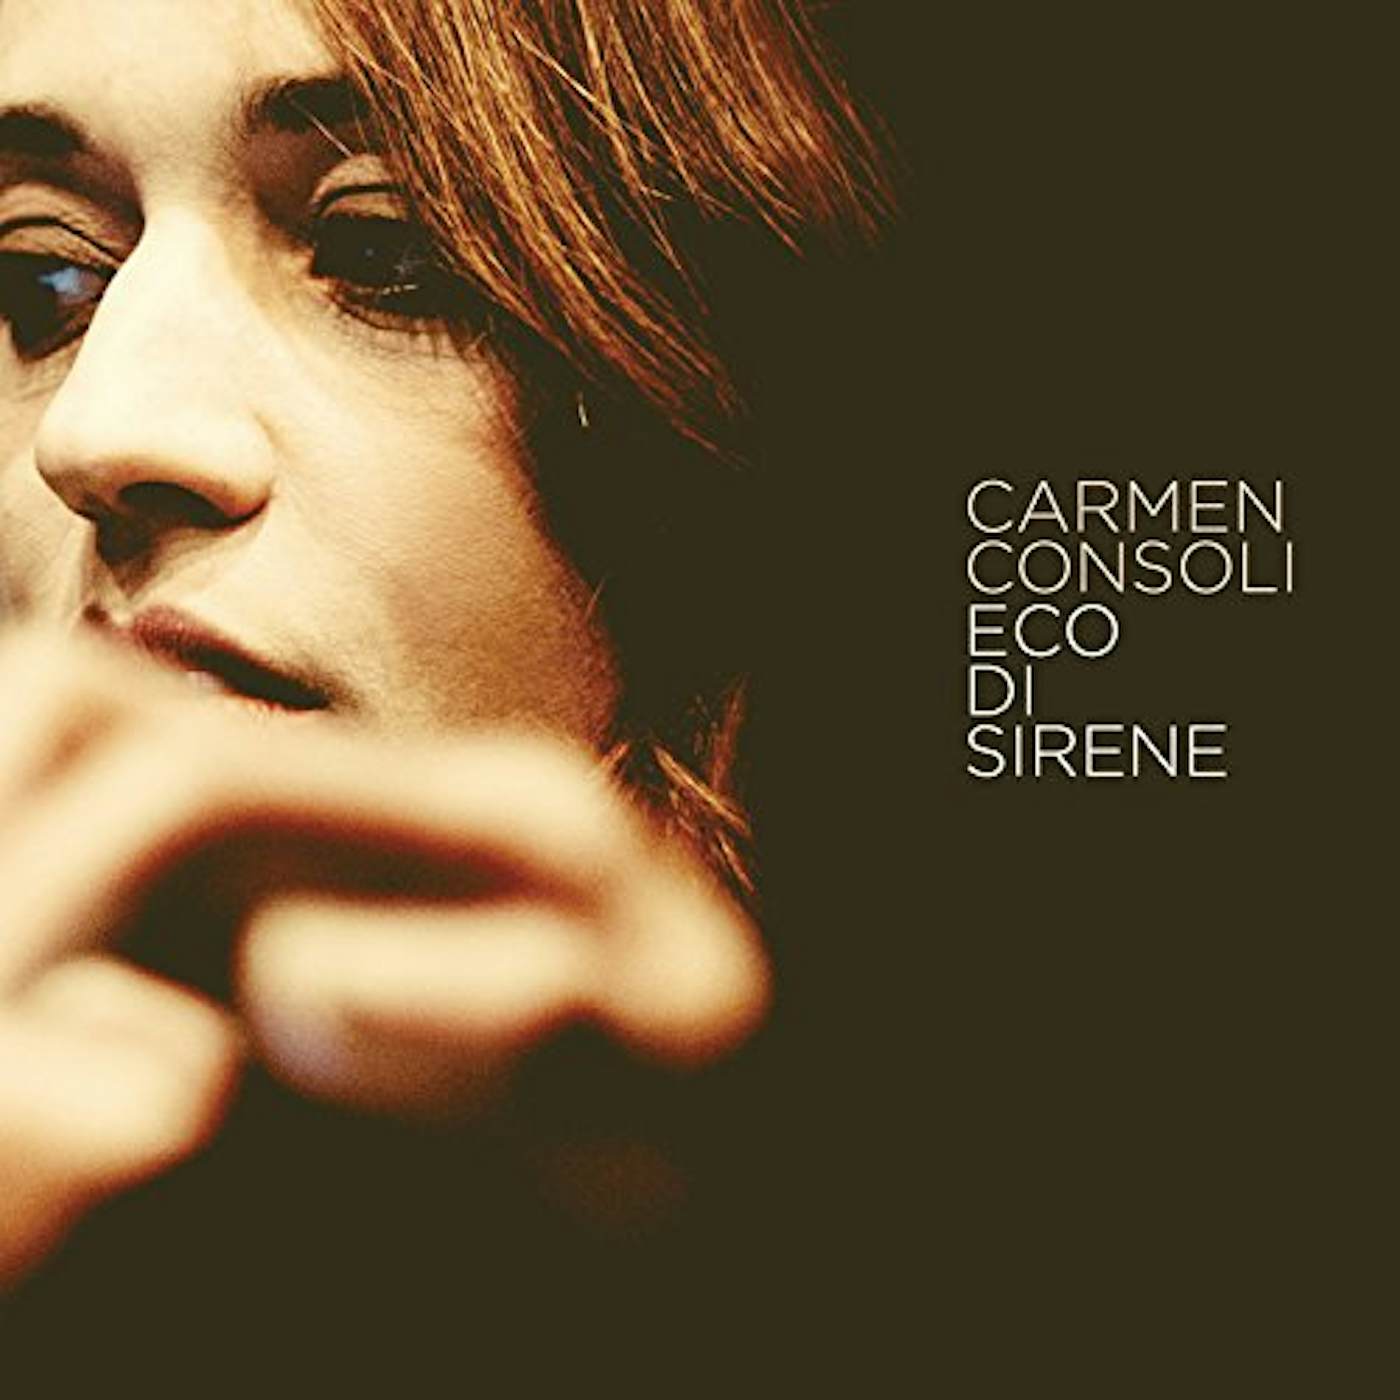 Carmen Consoli Eco Di Sirene Vinyl Record